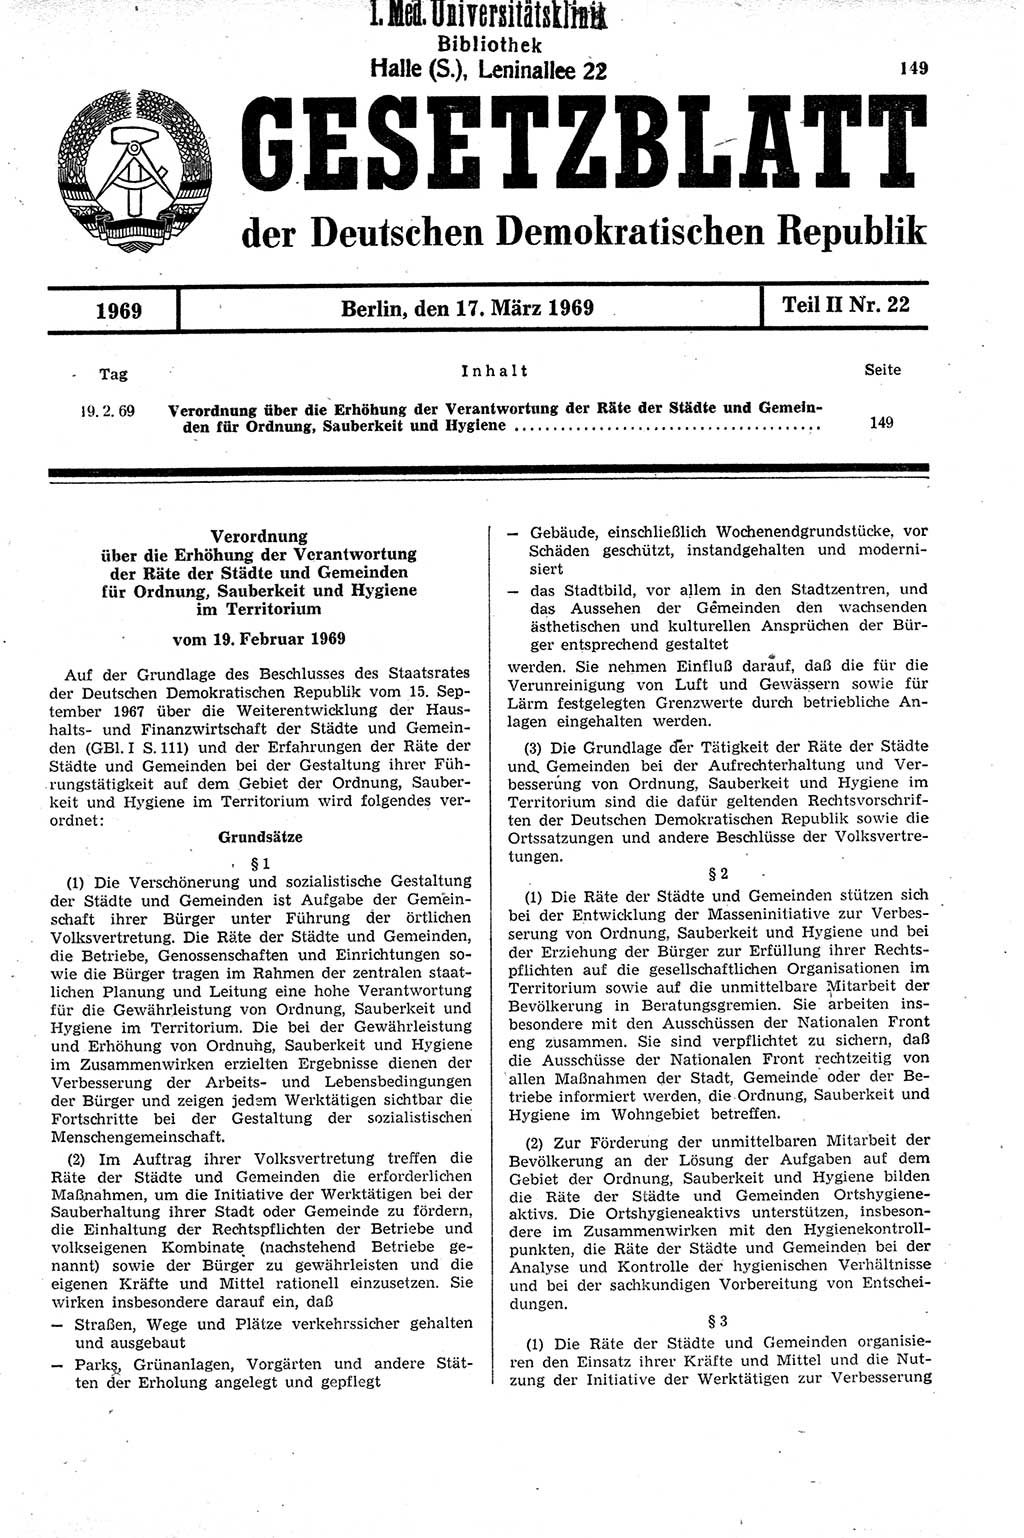 Gesetzblatt (GBl.) der Deutschen Demokratischen Republik (DDR) Teil ⅠⅠ 1969, Seite 149 (GBl. DDR ⅠⅠ 1969, S. 149)